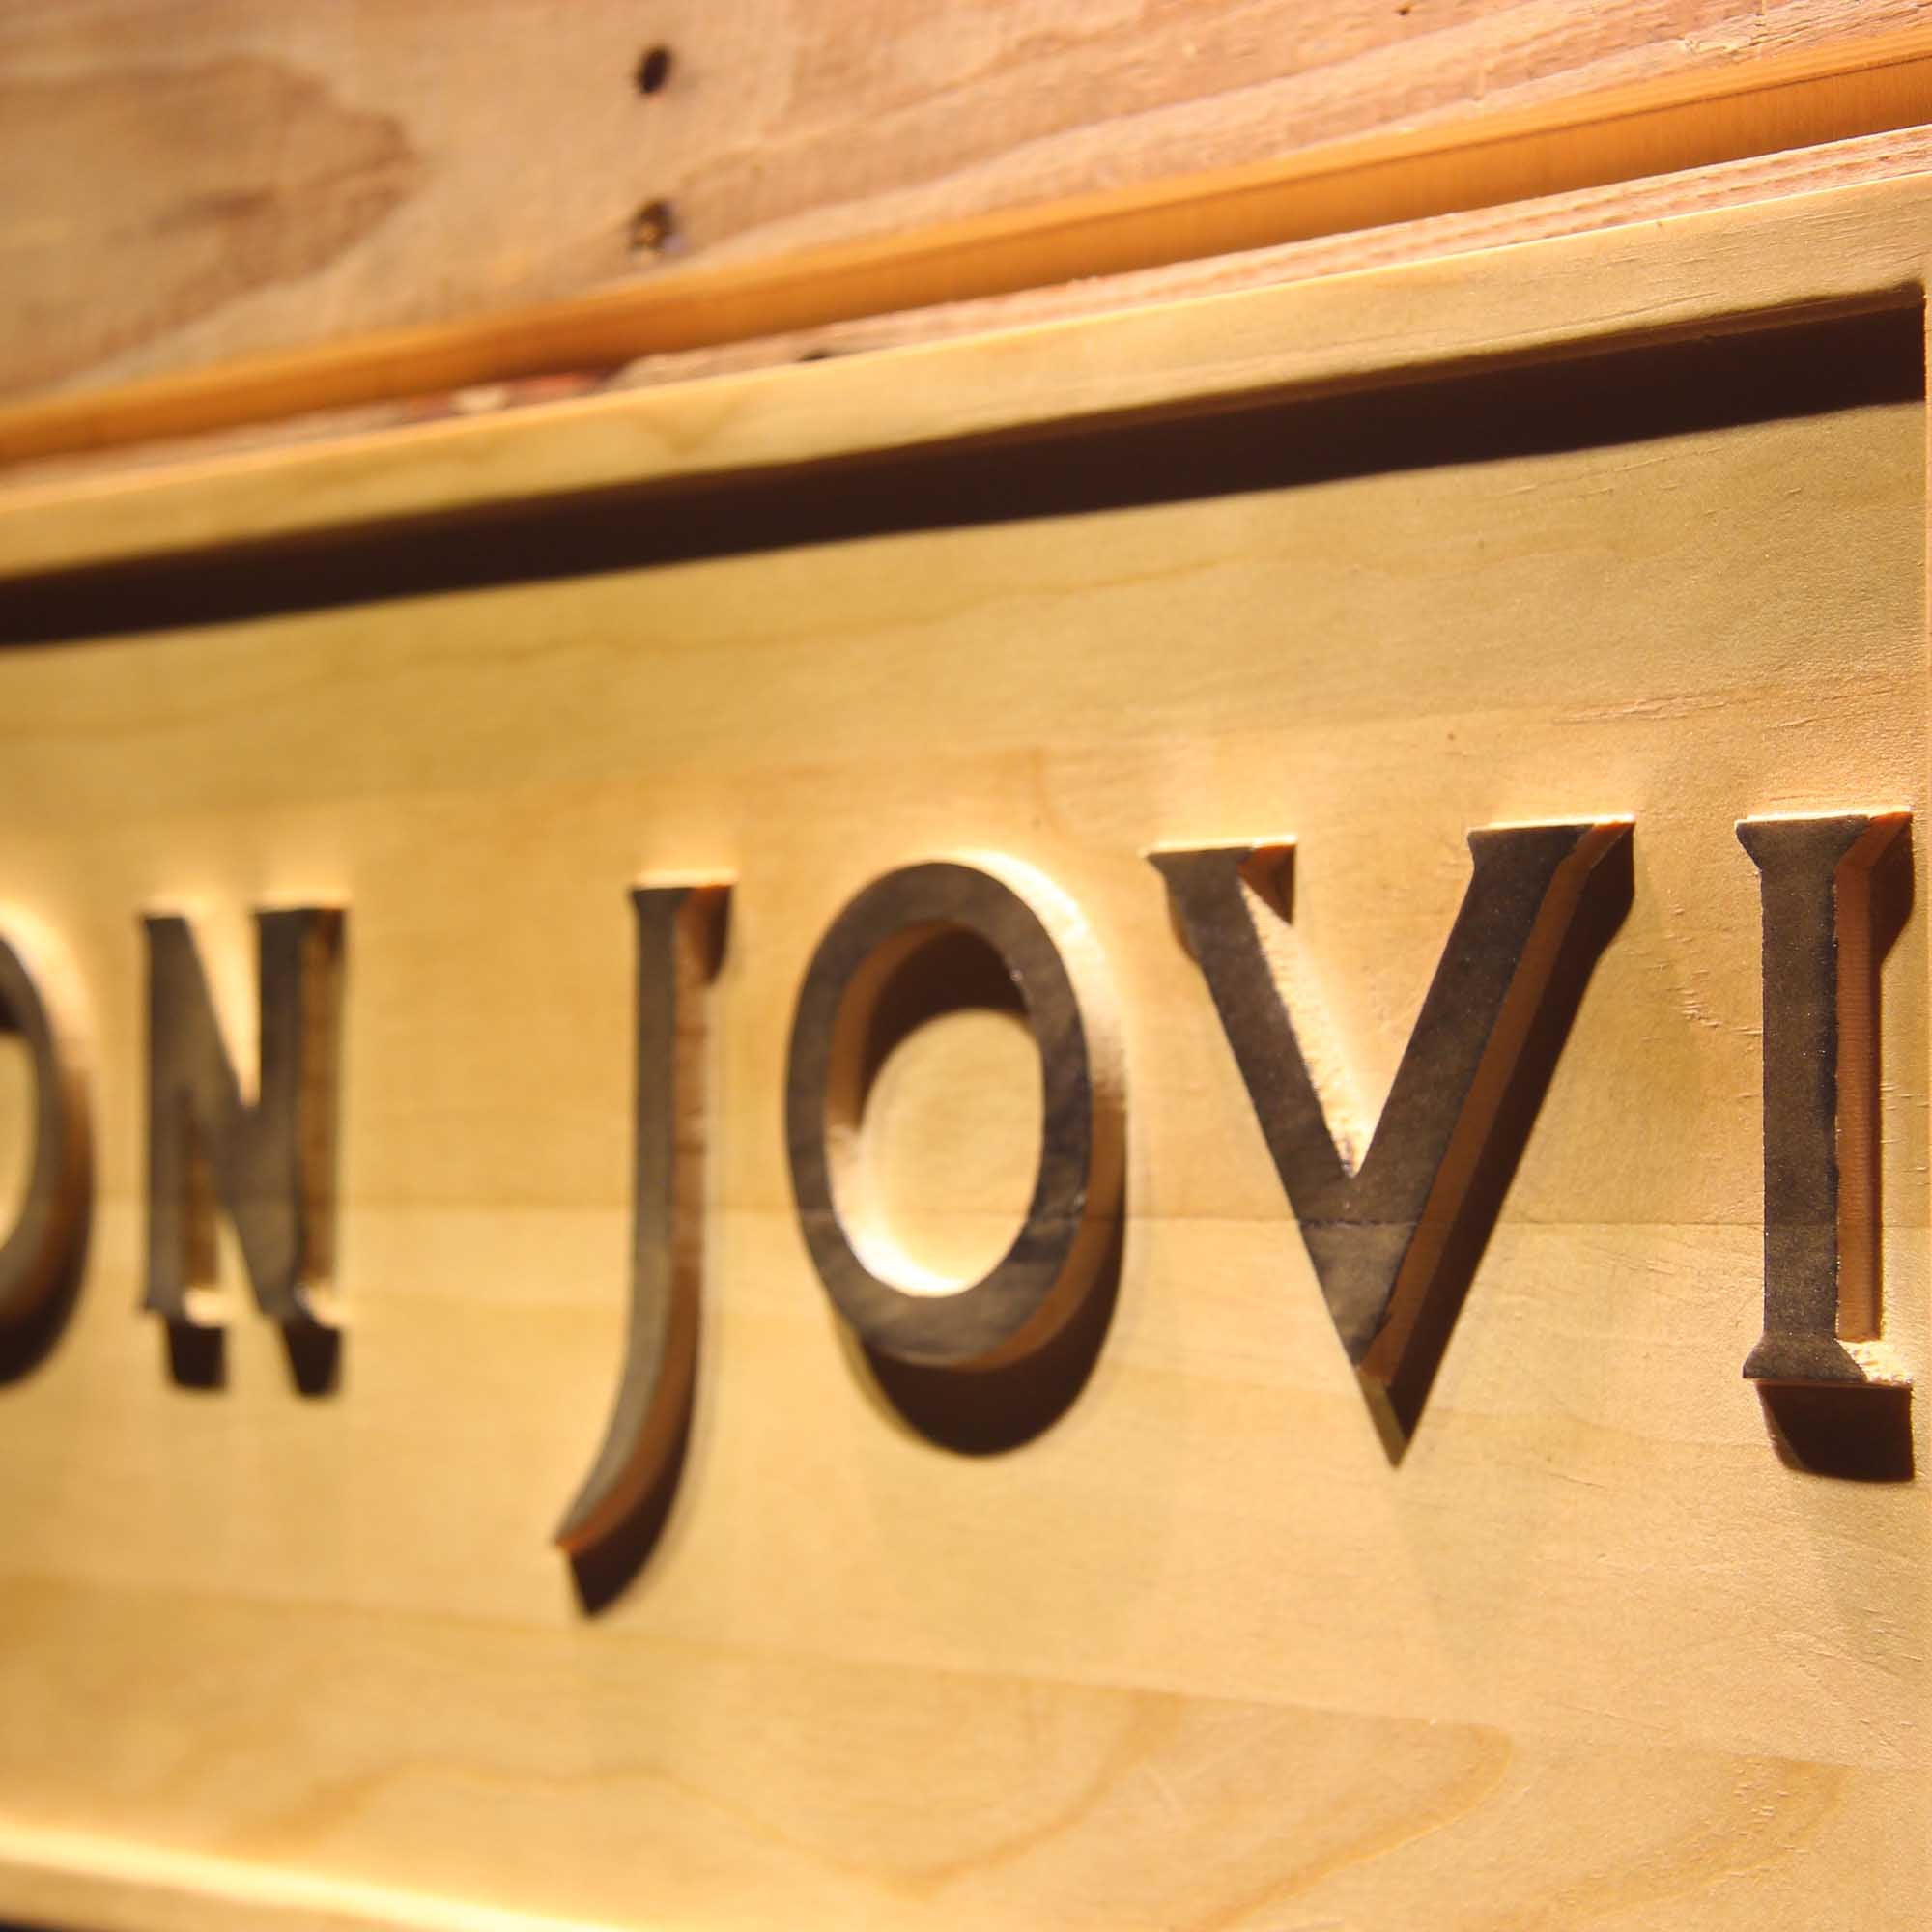 Bon Jovi 3D Wooden Engrave Sign